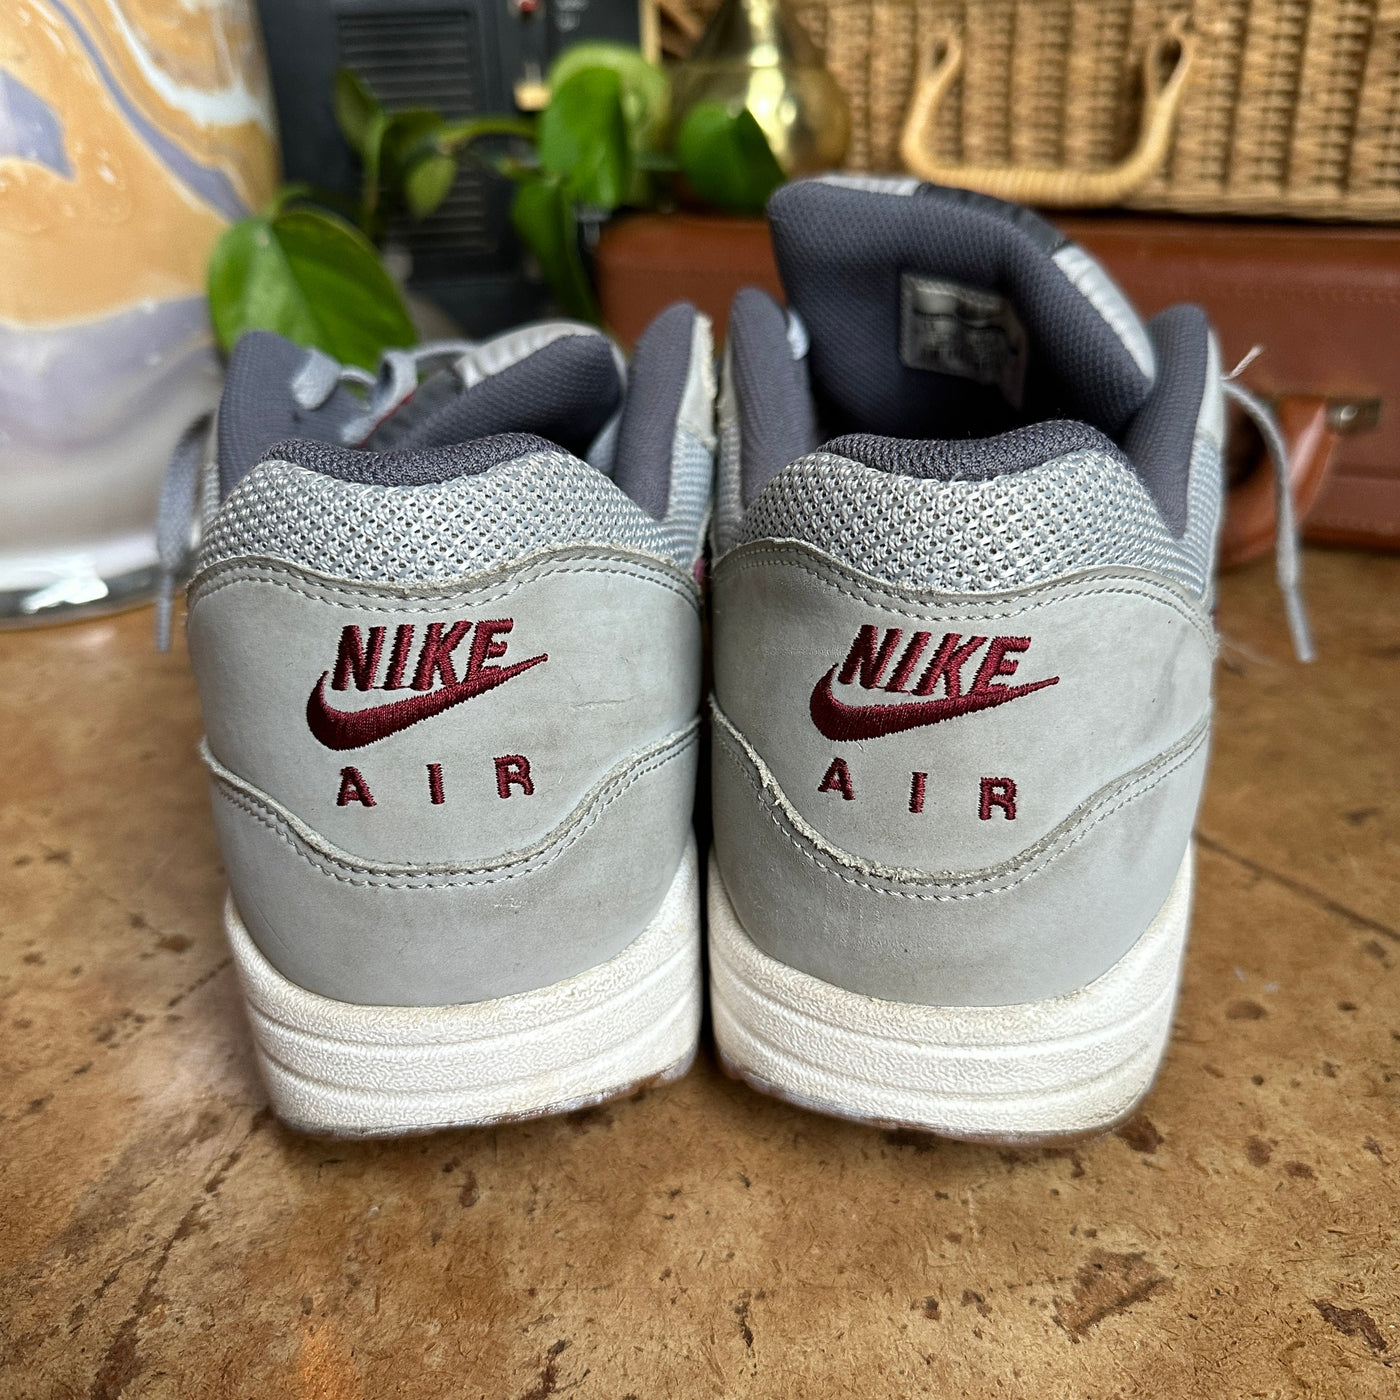 Grey “Nike Air Max” Sneakers